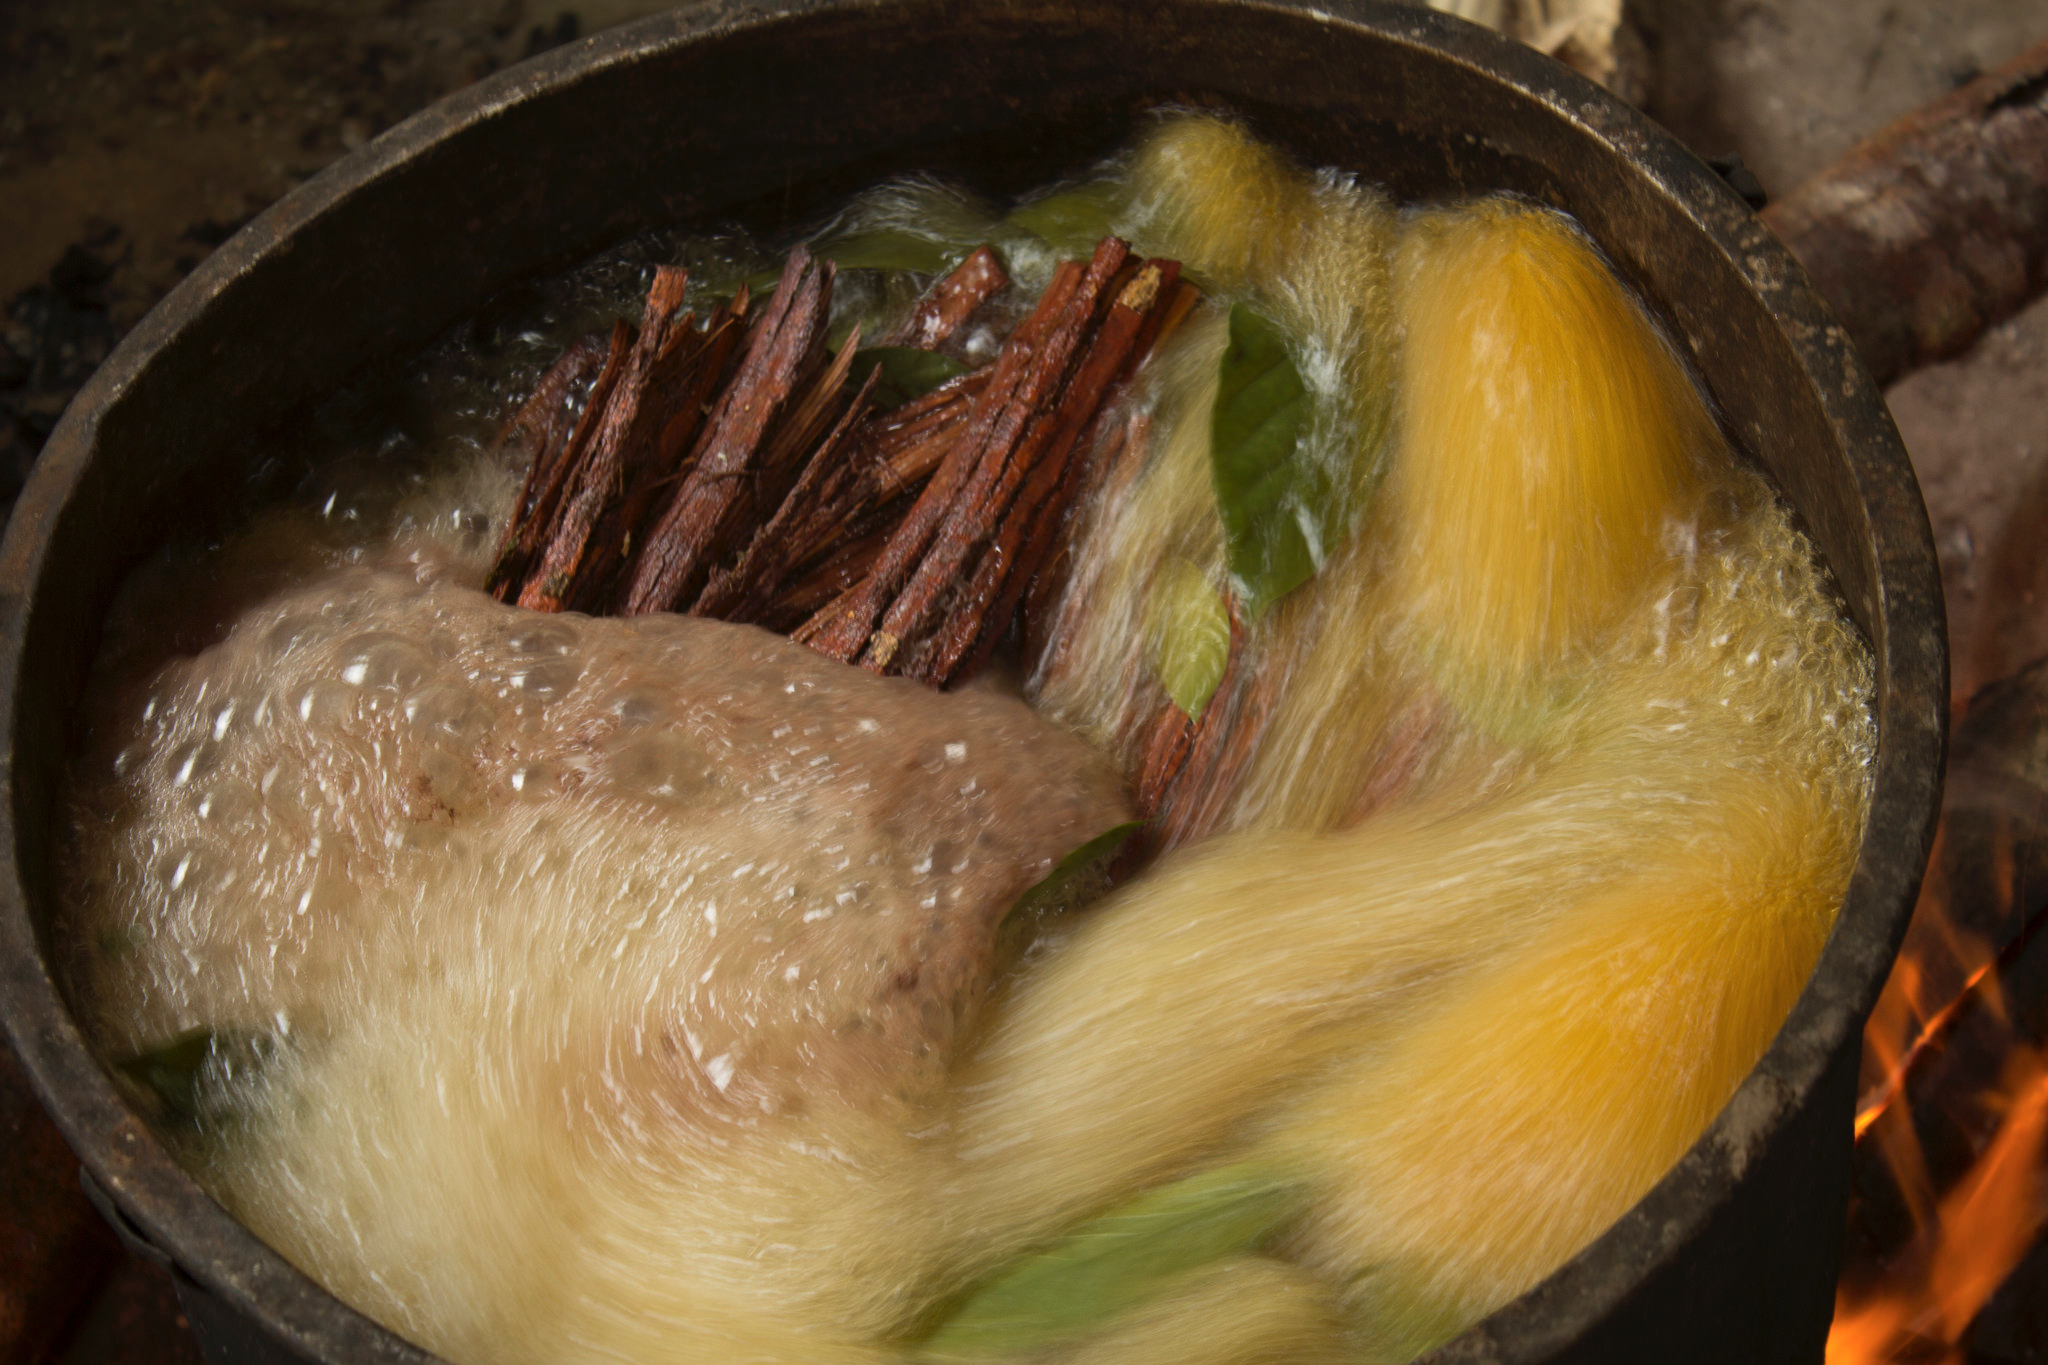 Ayahuasca preparation. Photo by Jairo Galvis Henao, via Flickr Creative Commons